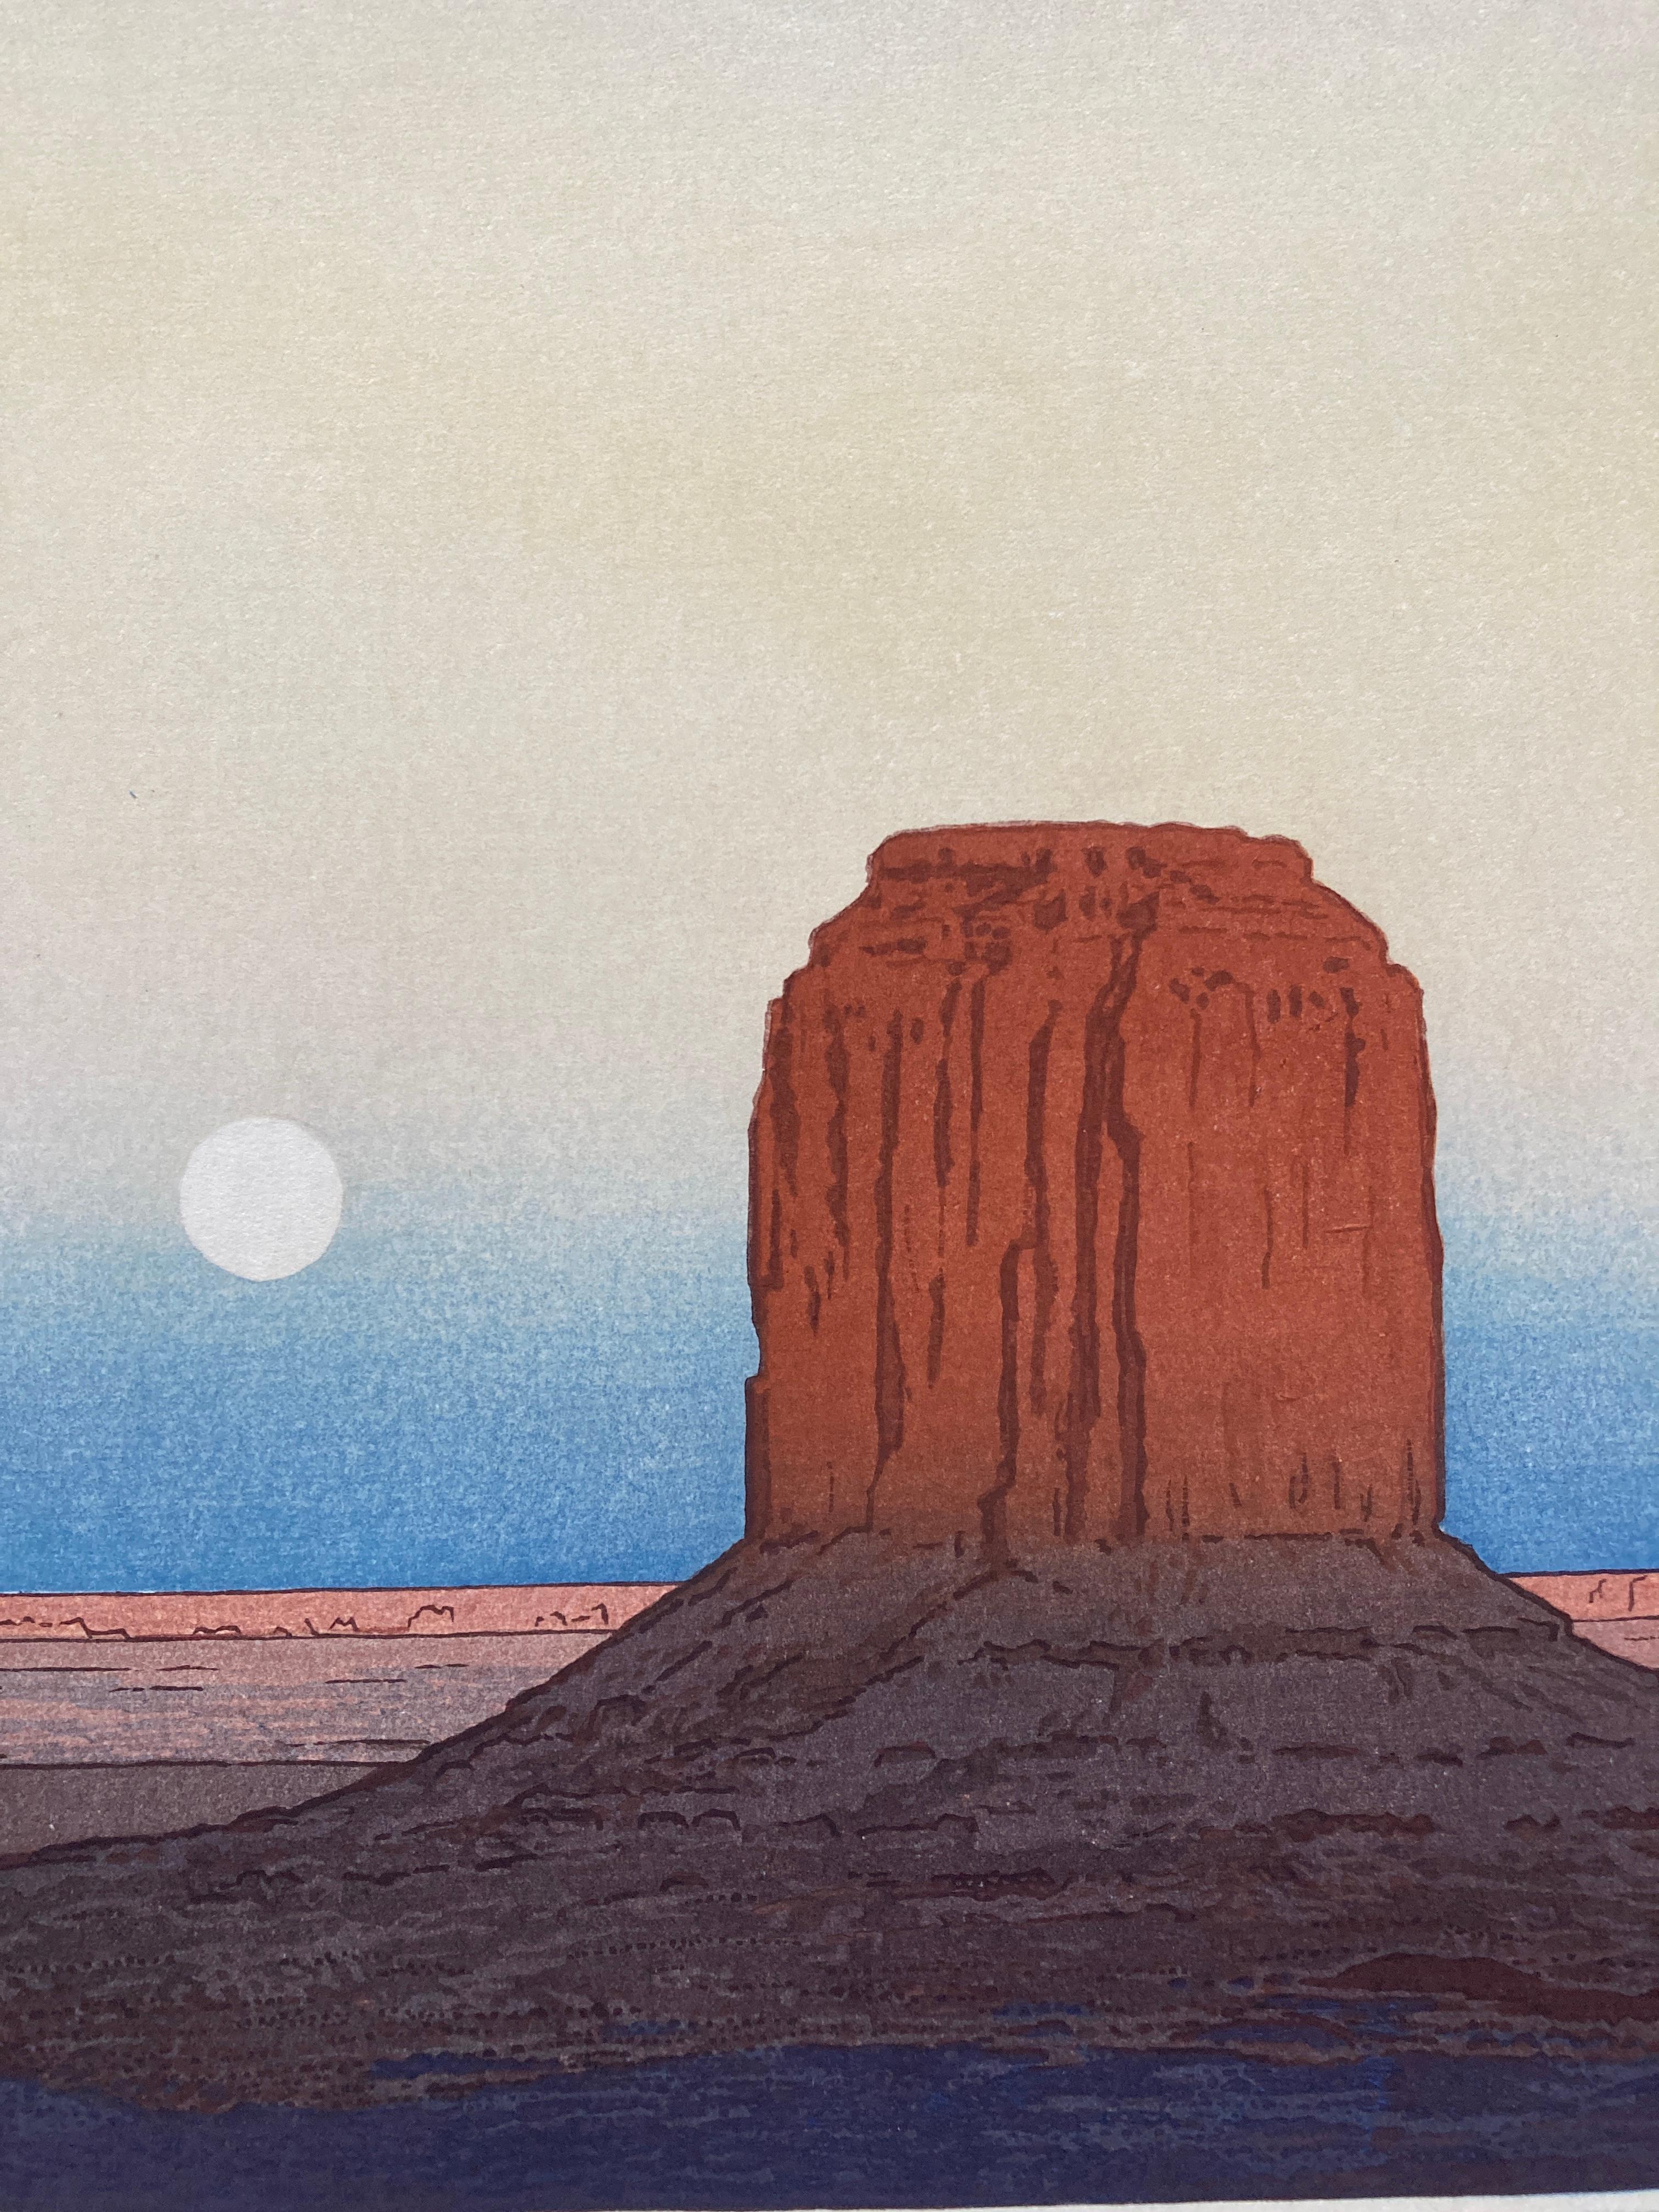 Toshi Yoshida 'Monument Valley' Woodblock Print, 1971 6